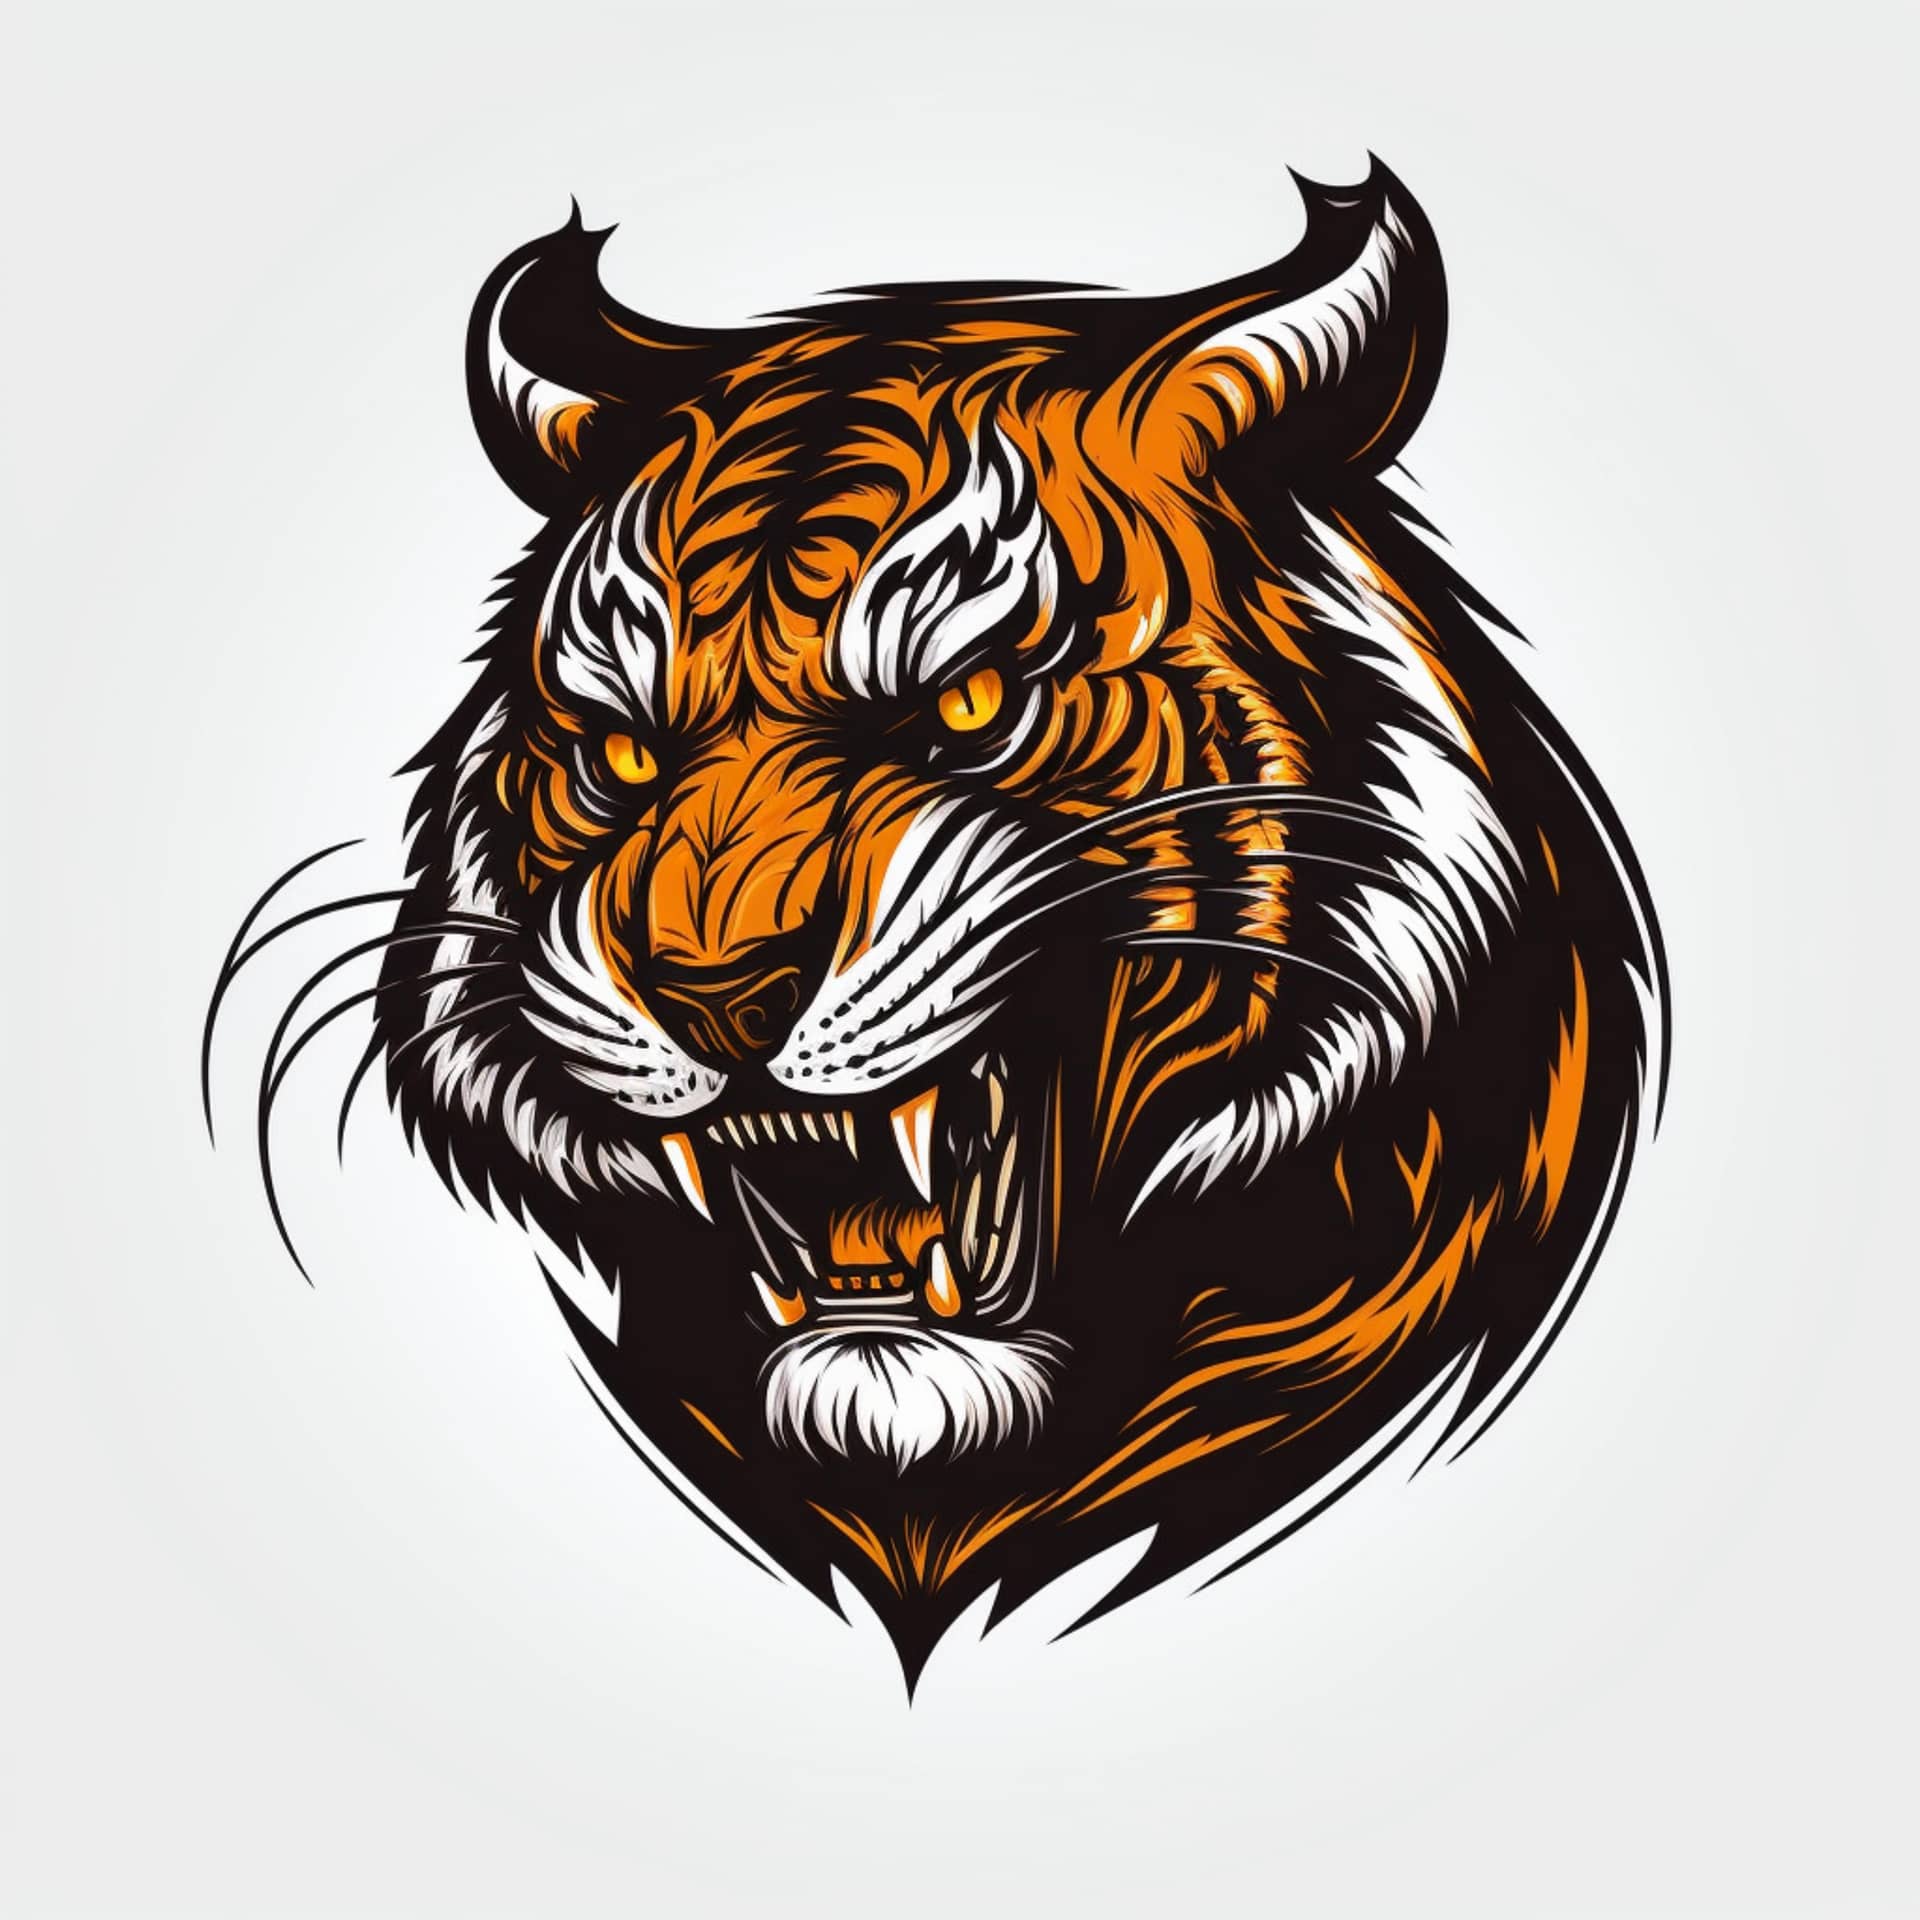 Cool tiger logo vector illustration excellent image